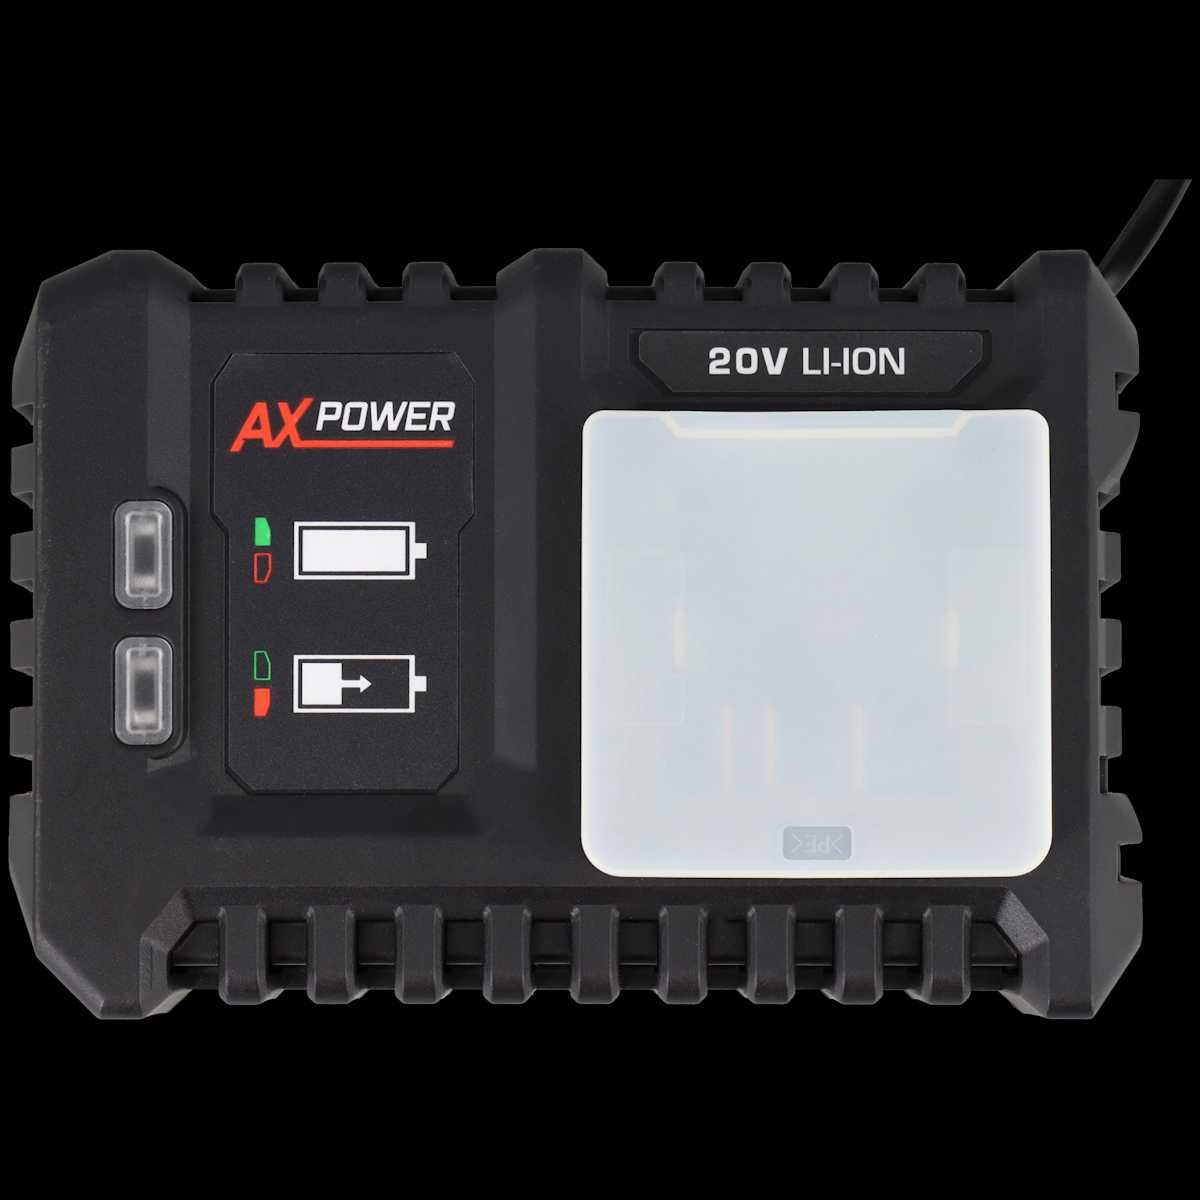 Szybka ładowarka i Akumulator AX-power
20 woltów | 2,0 Ah (Zestaw)